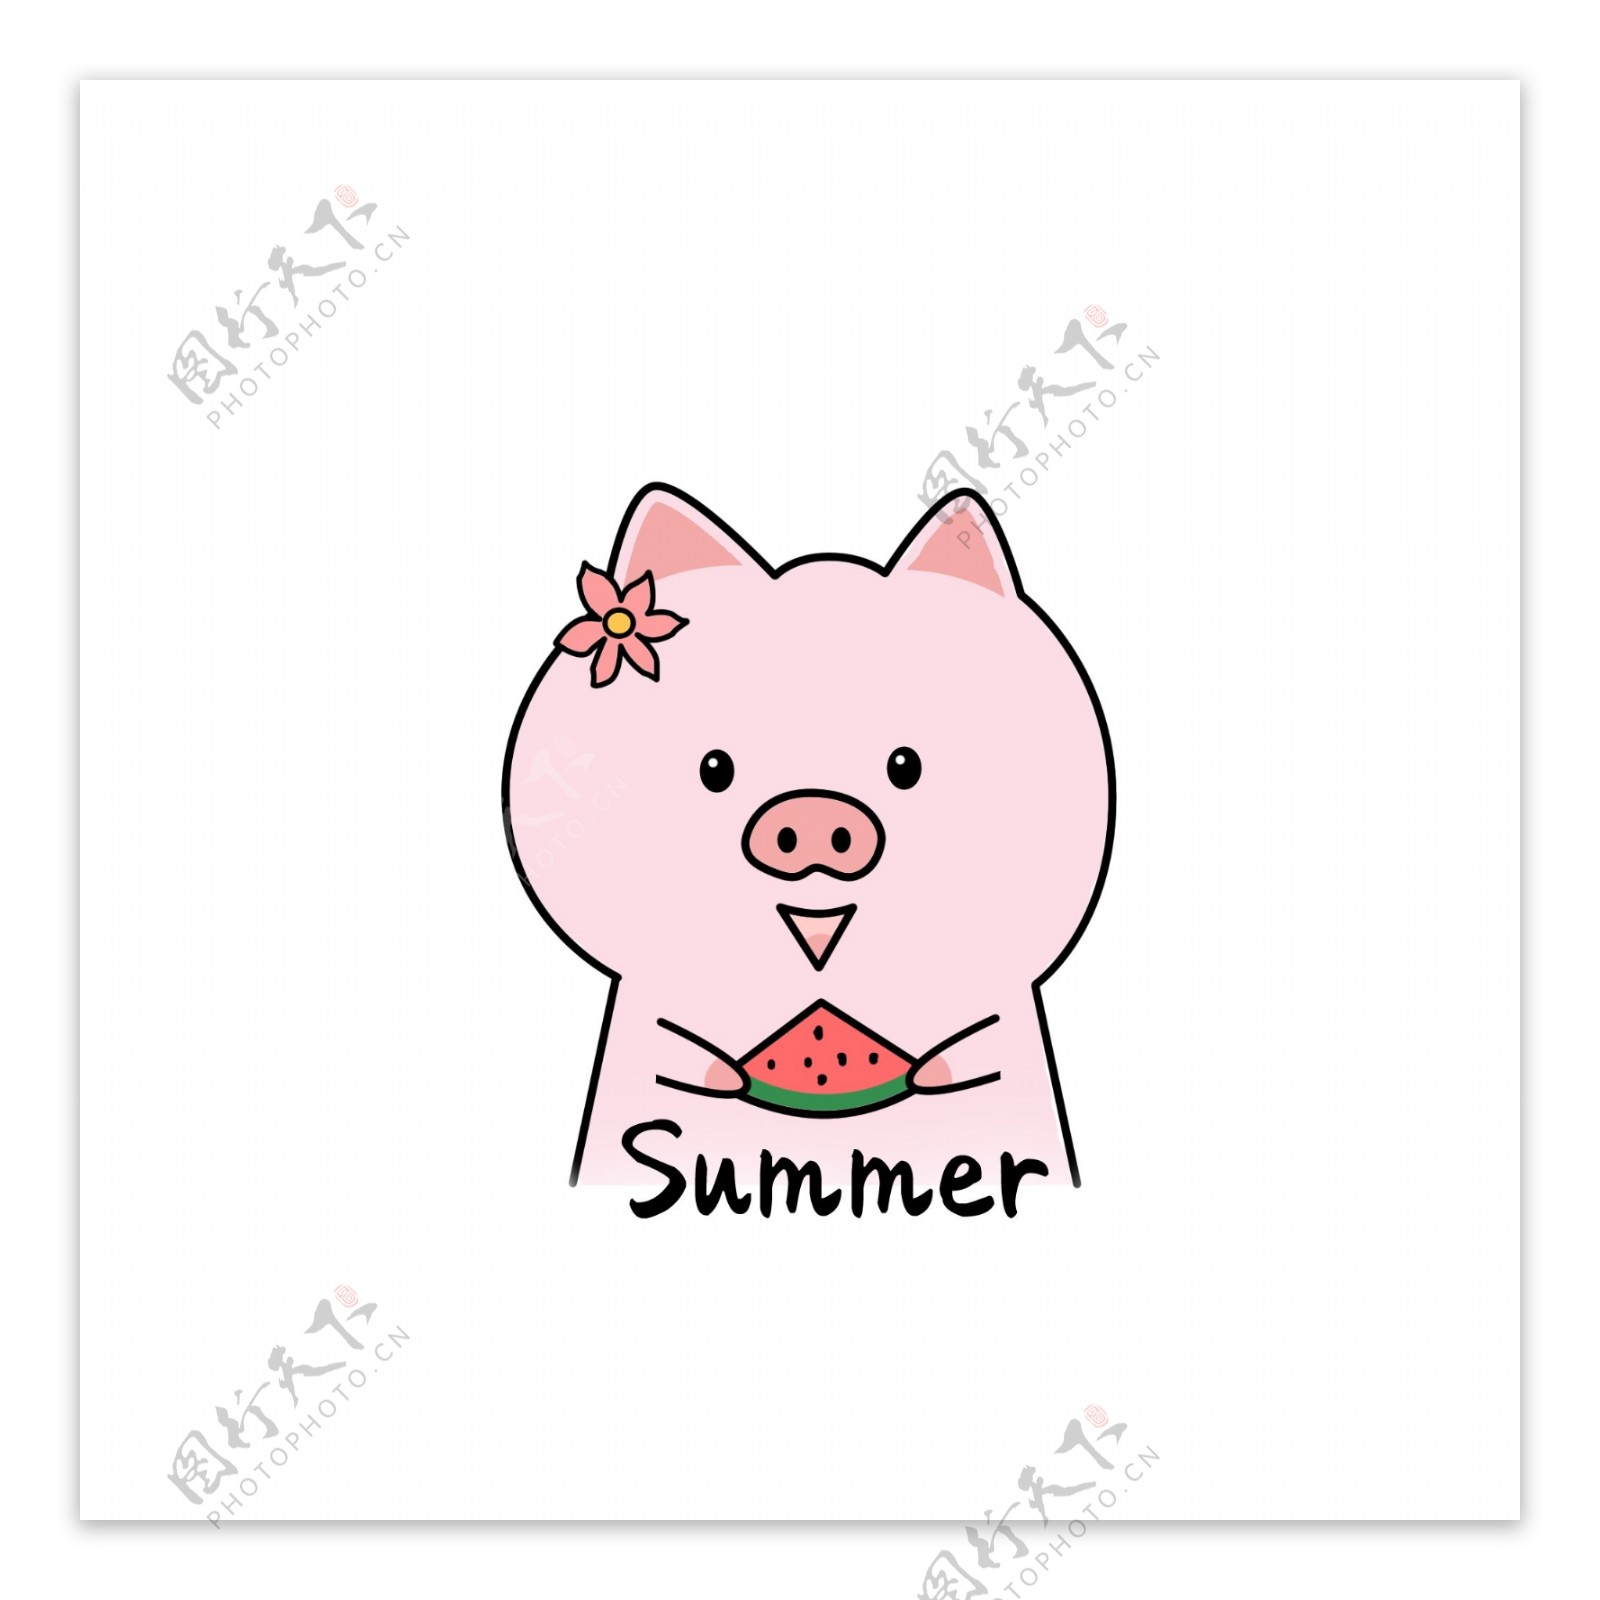 手绘卡通可爱吃西瓜的小猪